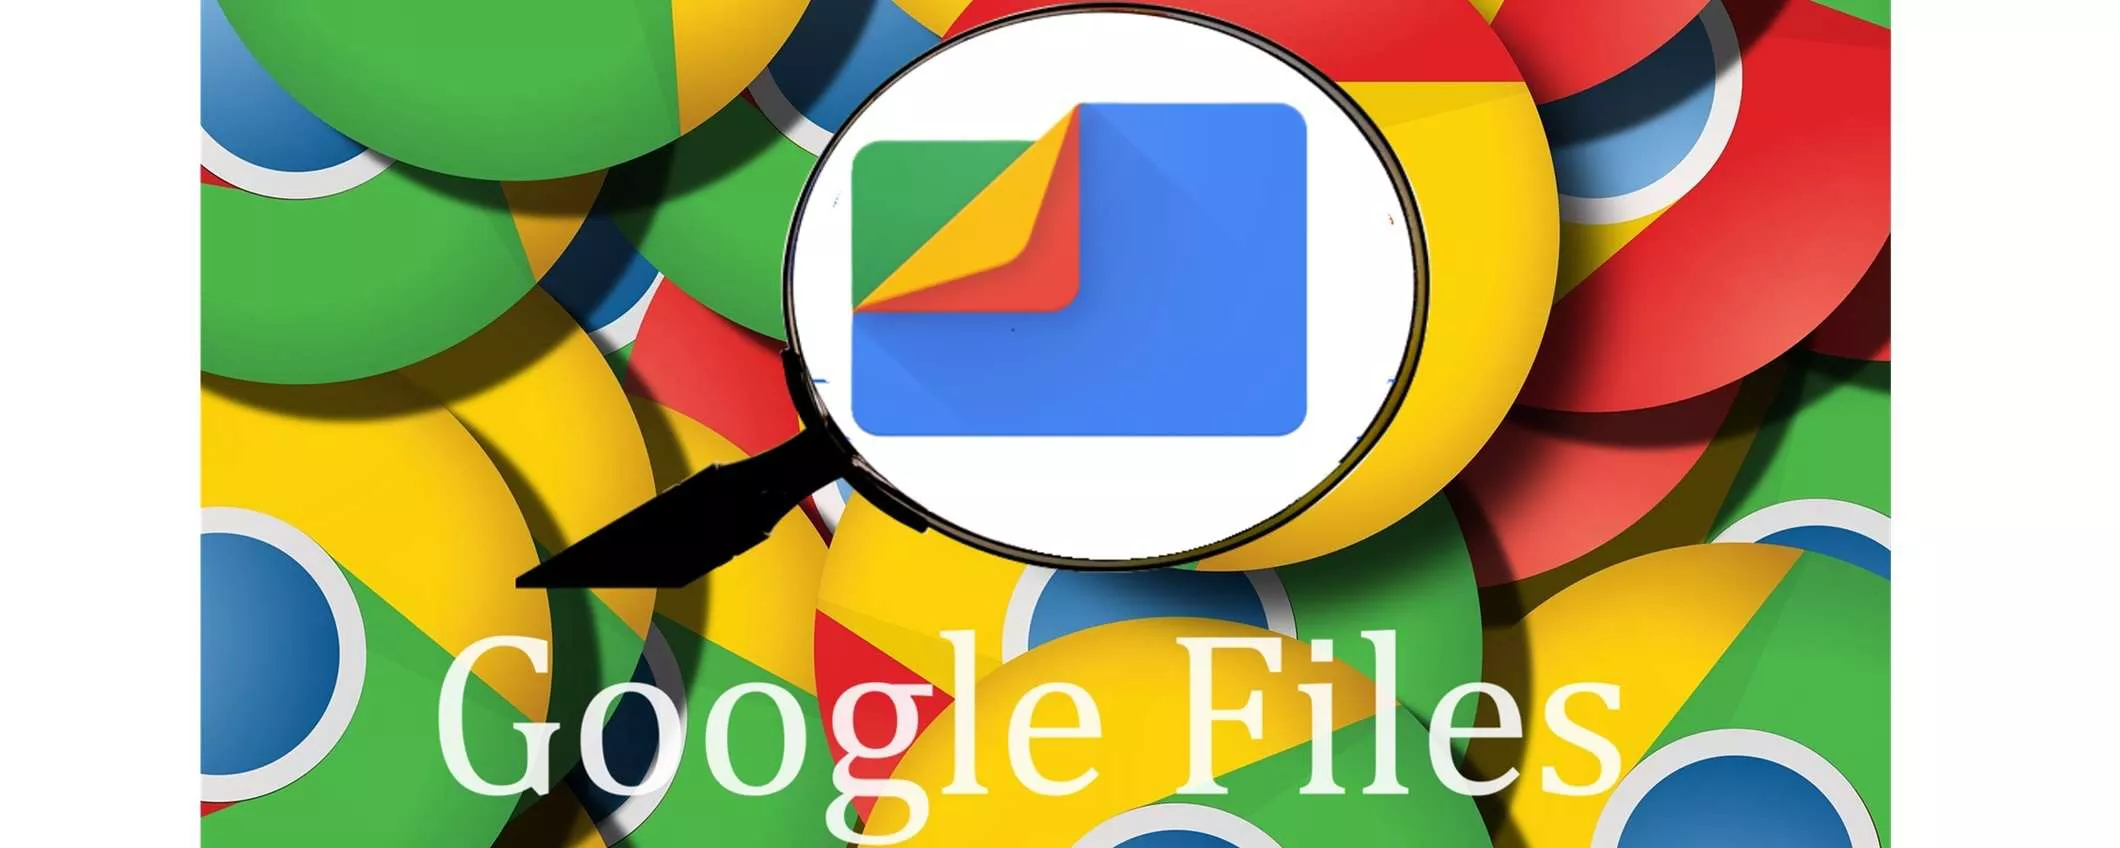 L'app Files di Google si è evoluta, come sfruttarla al massimo